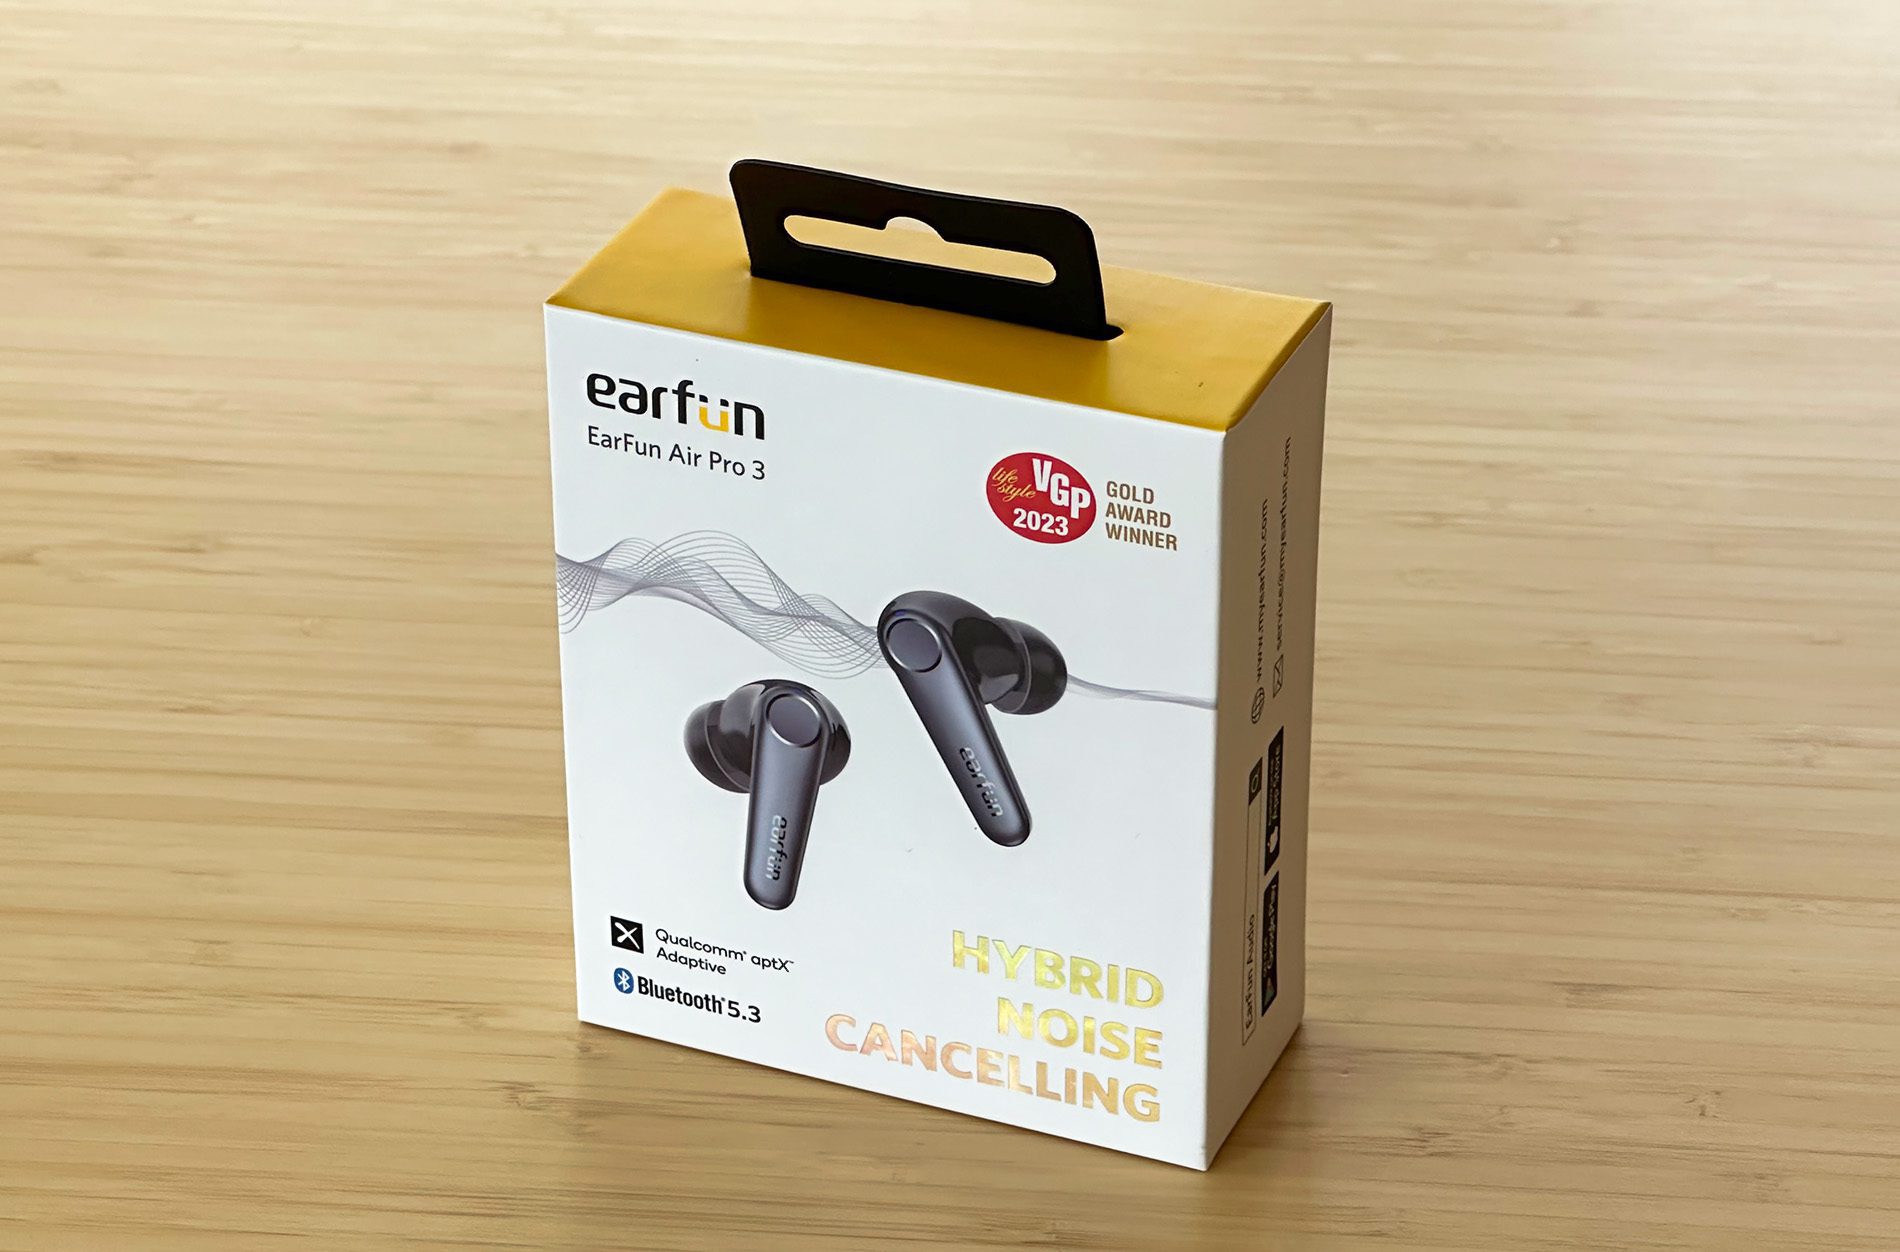 Die EarFun Air Pro 3 sind interessante Kopfhörer im mittleren Preissegment, die viele gute Features vereinen (Fotos: Sir Apfelot).